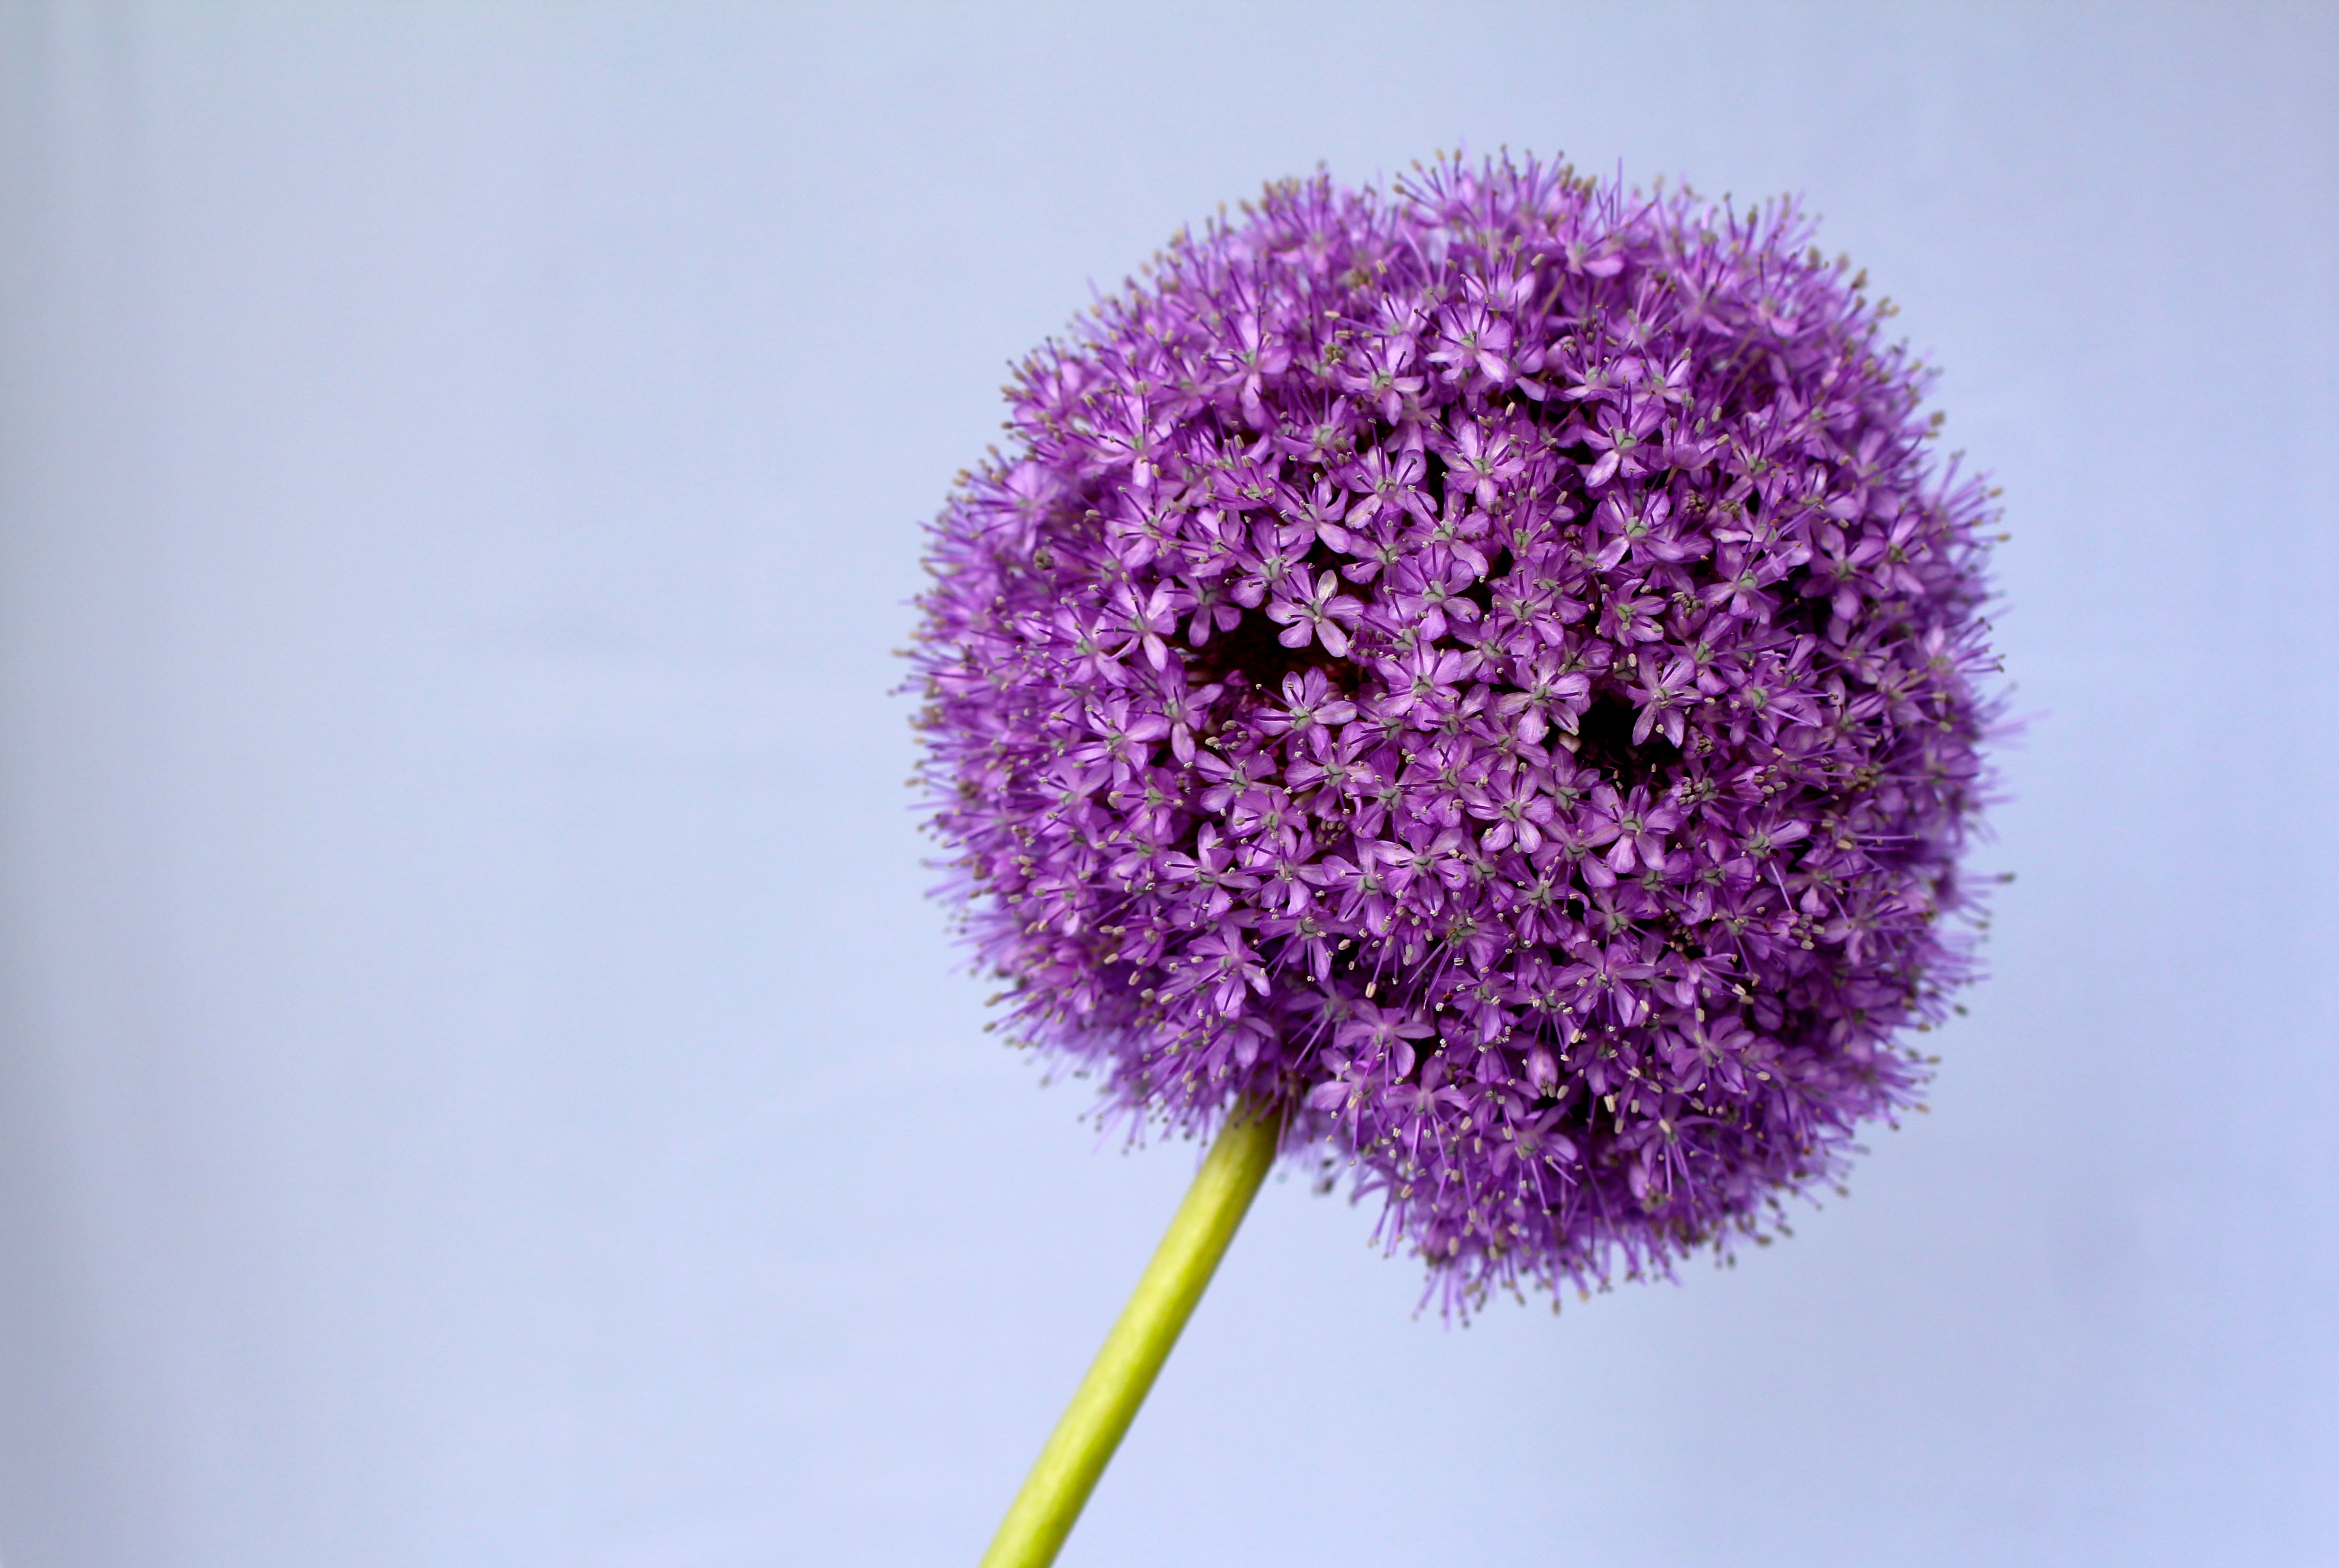 Purple Dandelion , HD Wallpaper & Backgrounds